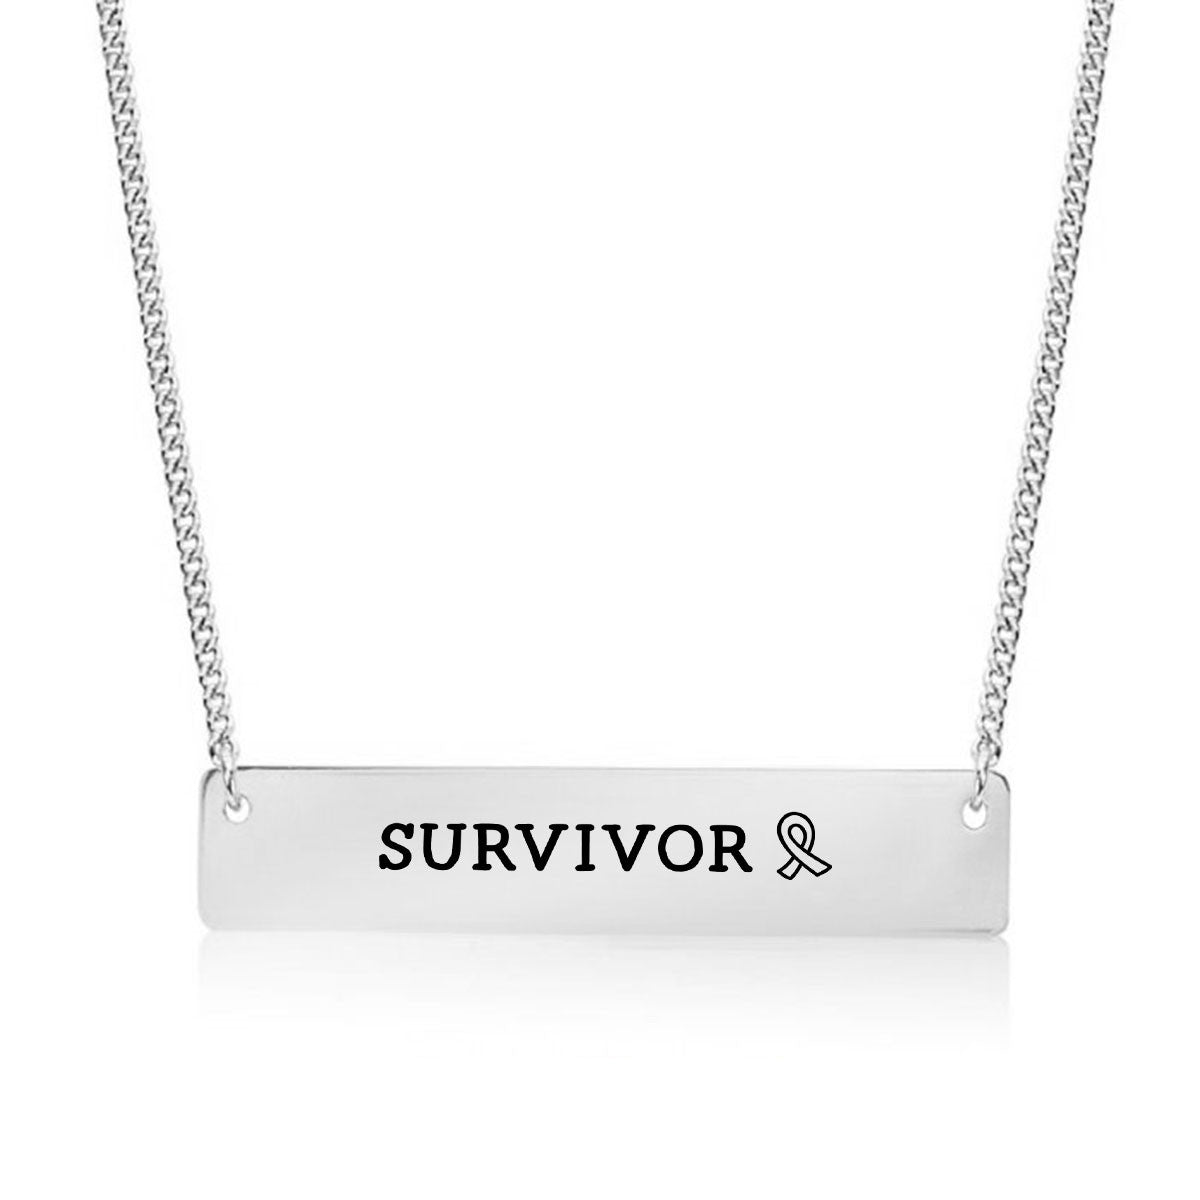 Survivor Gold / Silver Bar Necklace - pipercleo.com